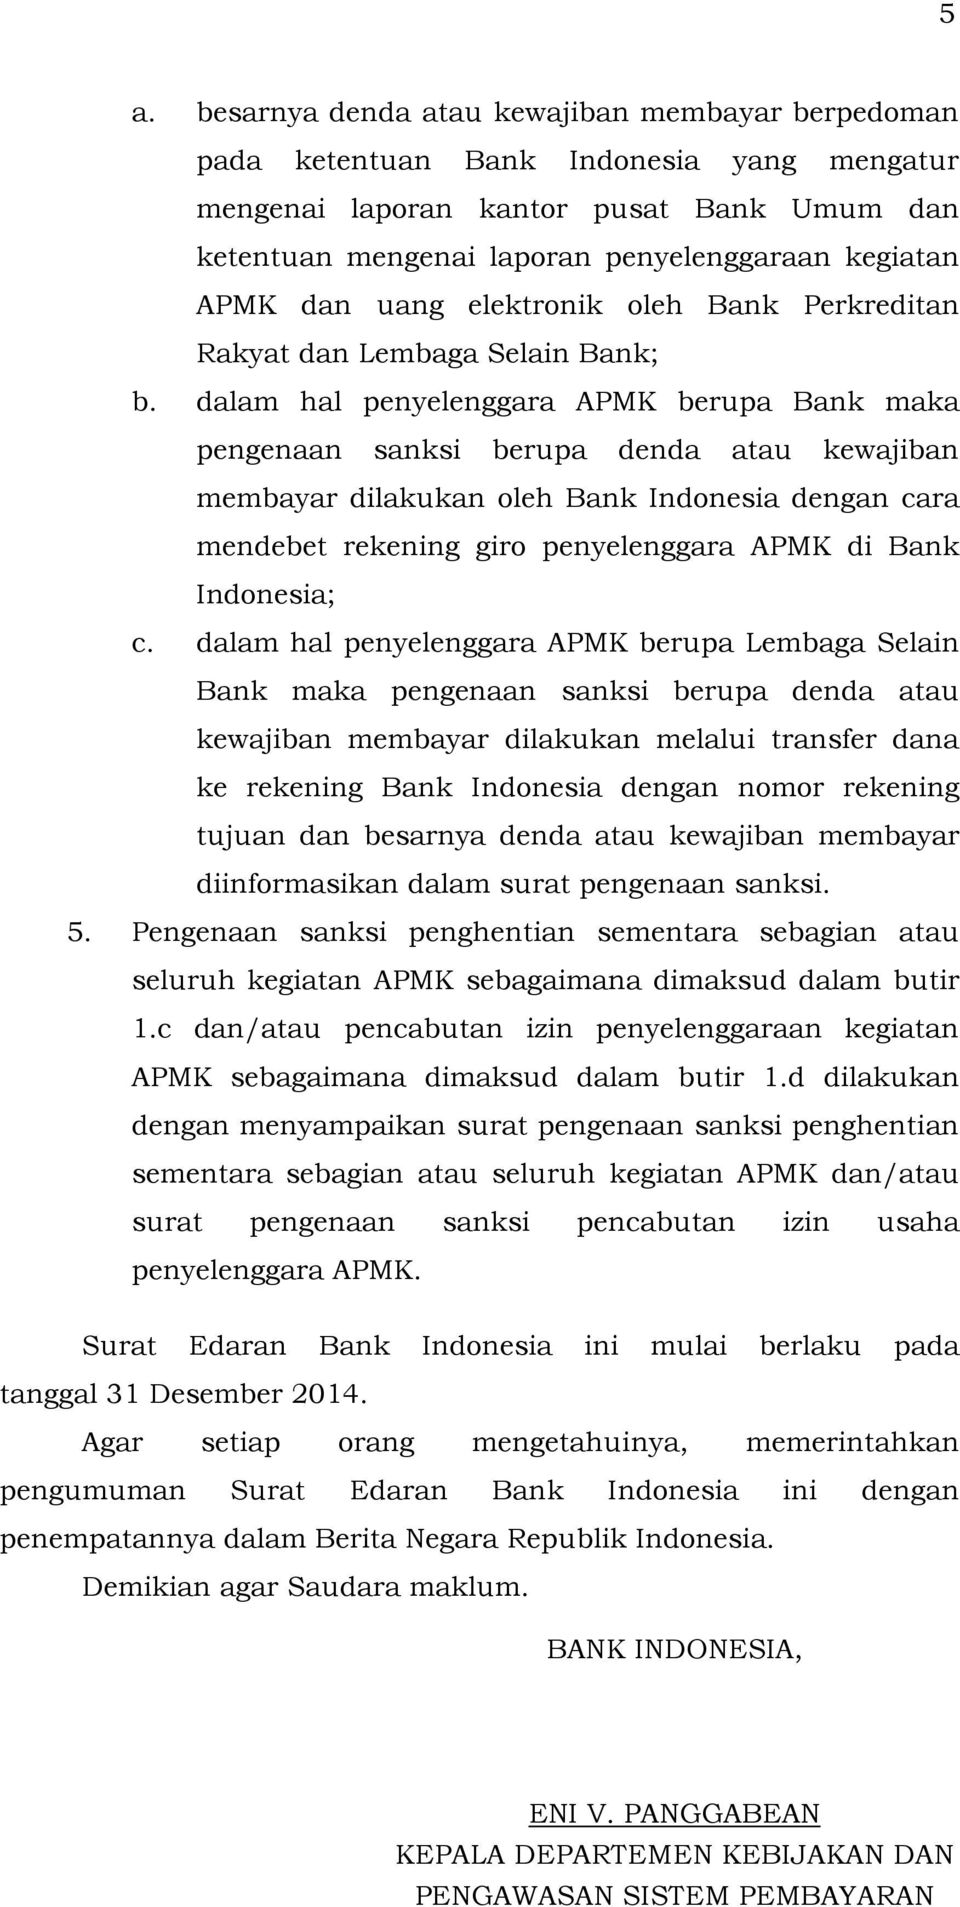 dalam hal penyelenggara APMK berupa Bank maka pengenaan sanksi berupa denda atau kewajiban membayar dilakukan oleh Bank Indonesia dengan cara mendebet rekening giro penyelenggara APMK di Bank